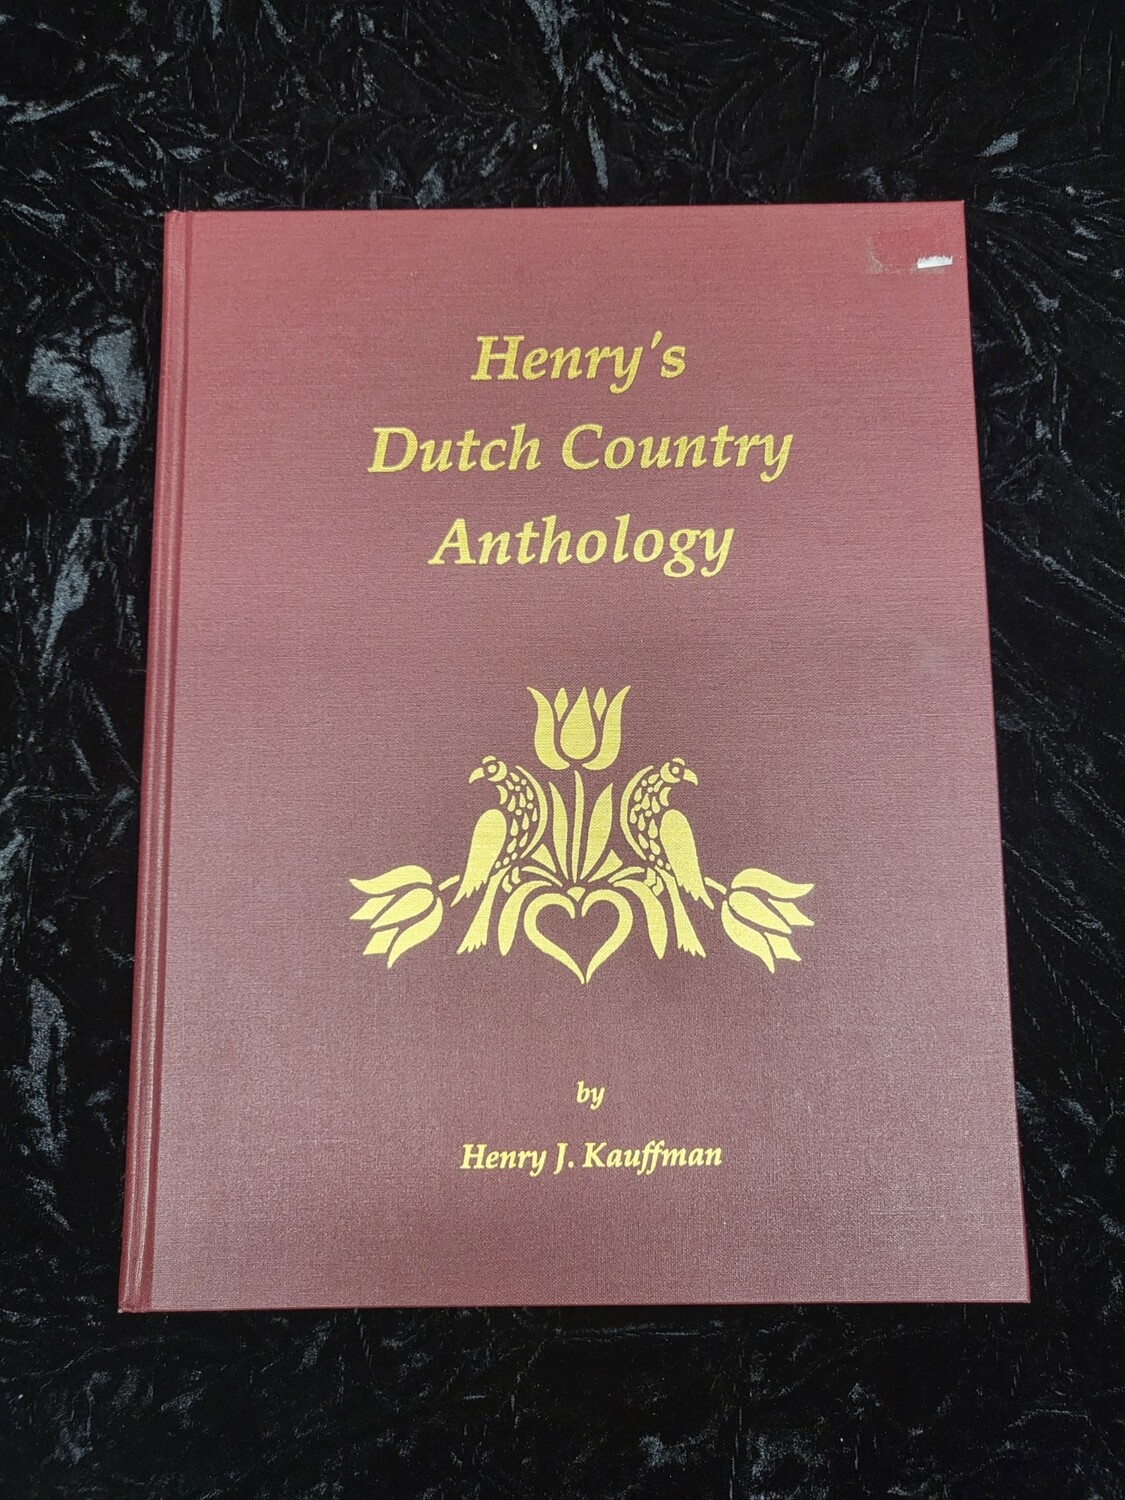 Henry's Dutch County Anthology